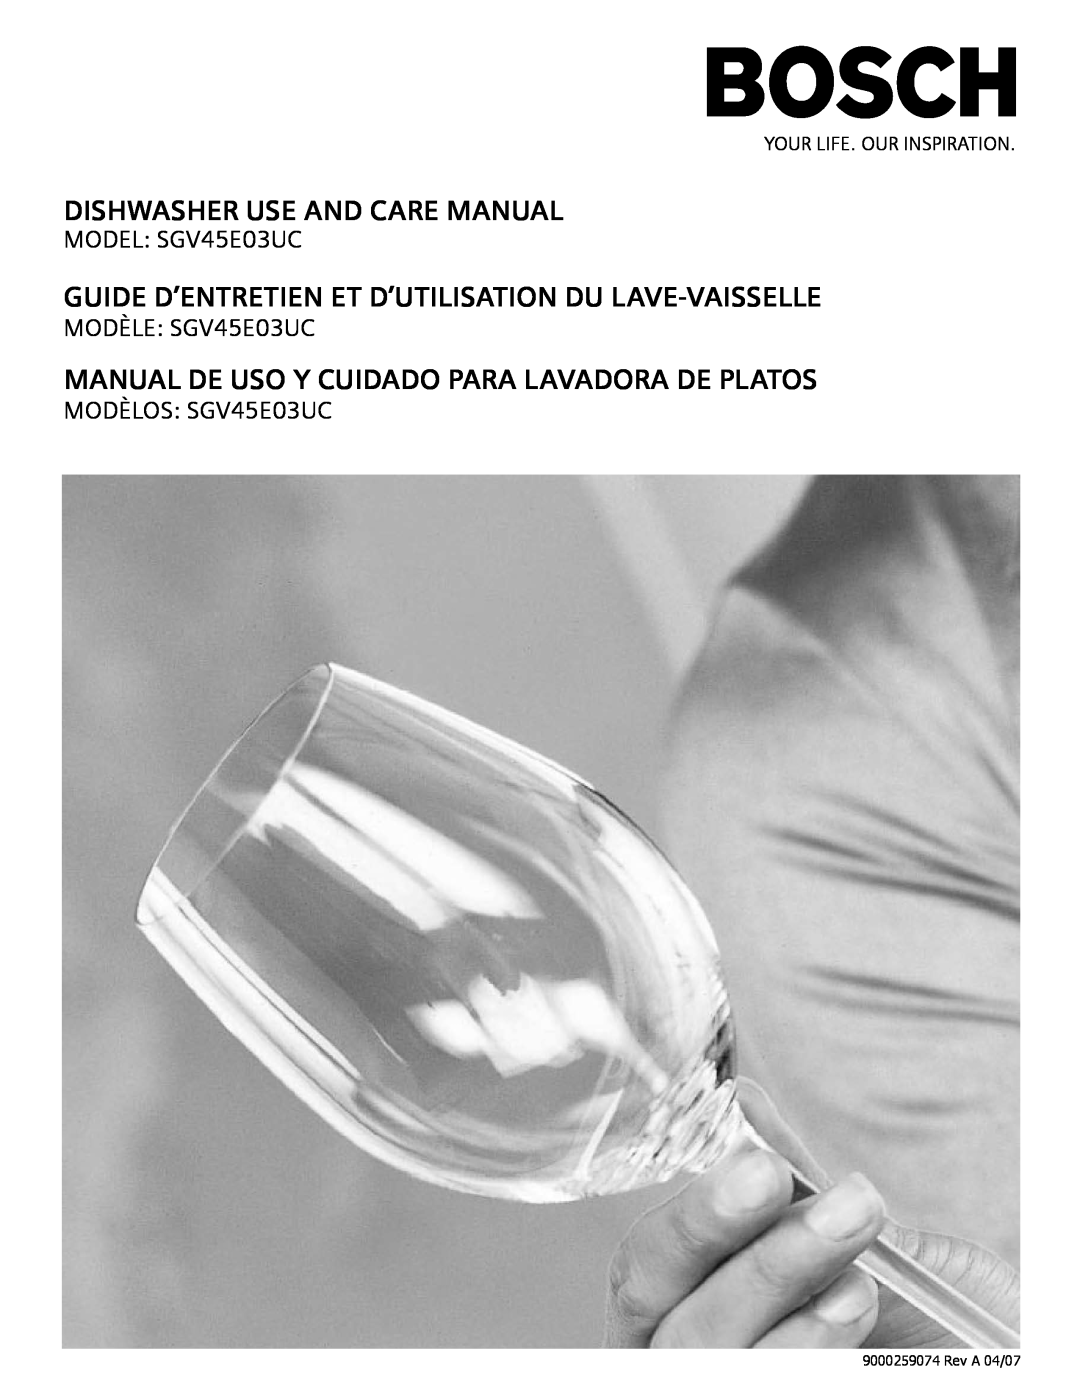 Bosch Appliances SGV45E03UC manual Dishwasher Use And Care Manual, Guide D’Entretien Et D’Utilisation Du Lave-Vaisselle 